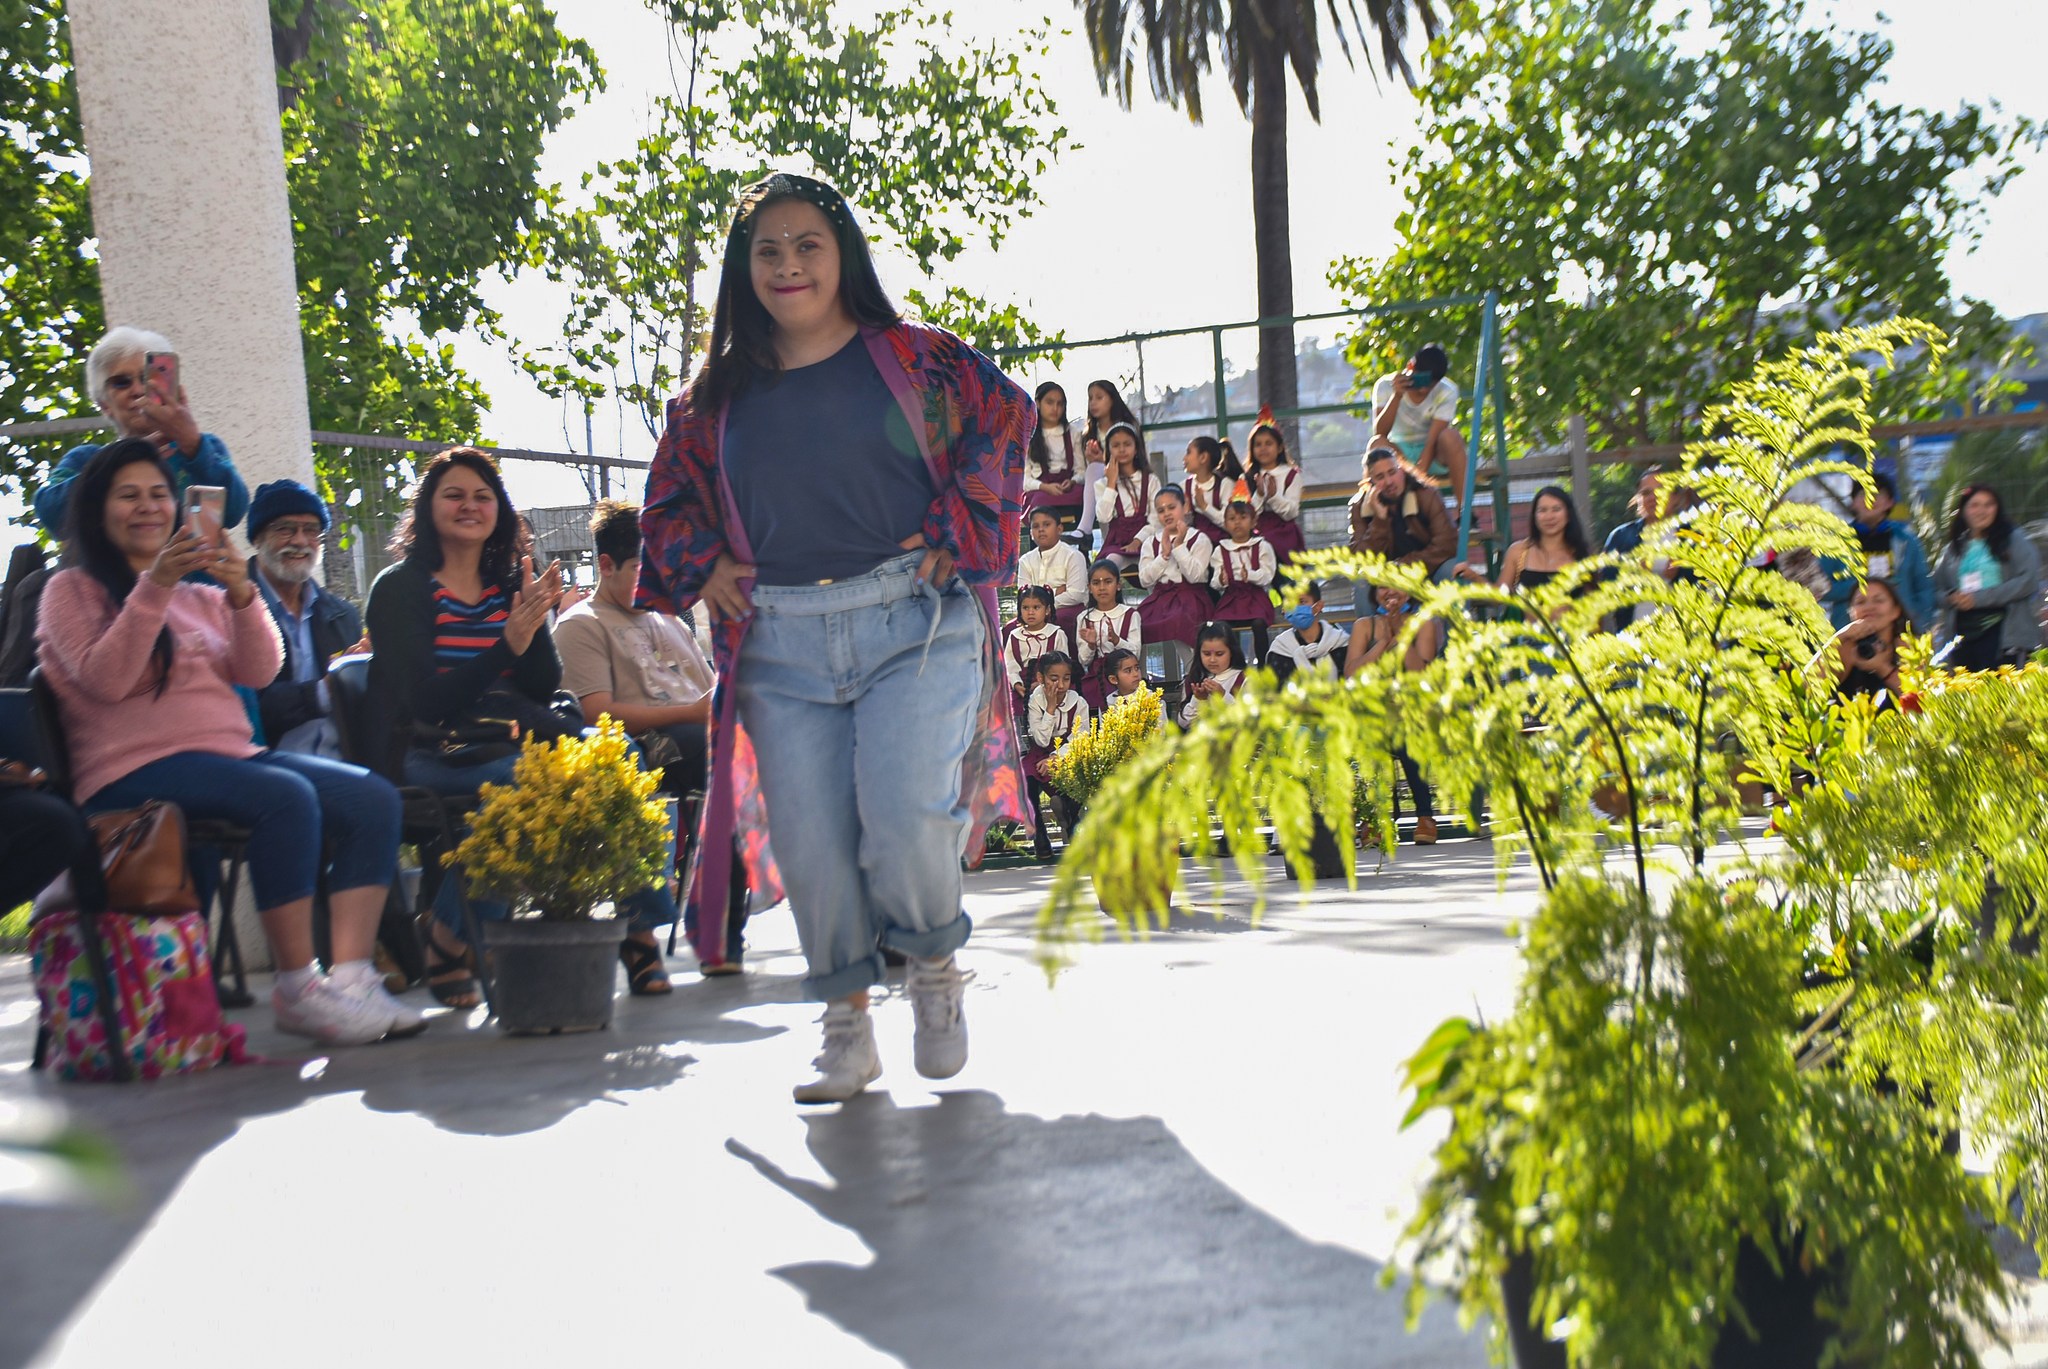 En Quillota se realizó desfile de modas inclusivo en el Día Internacional de los DDHH